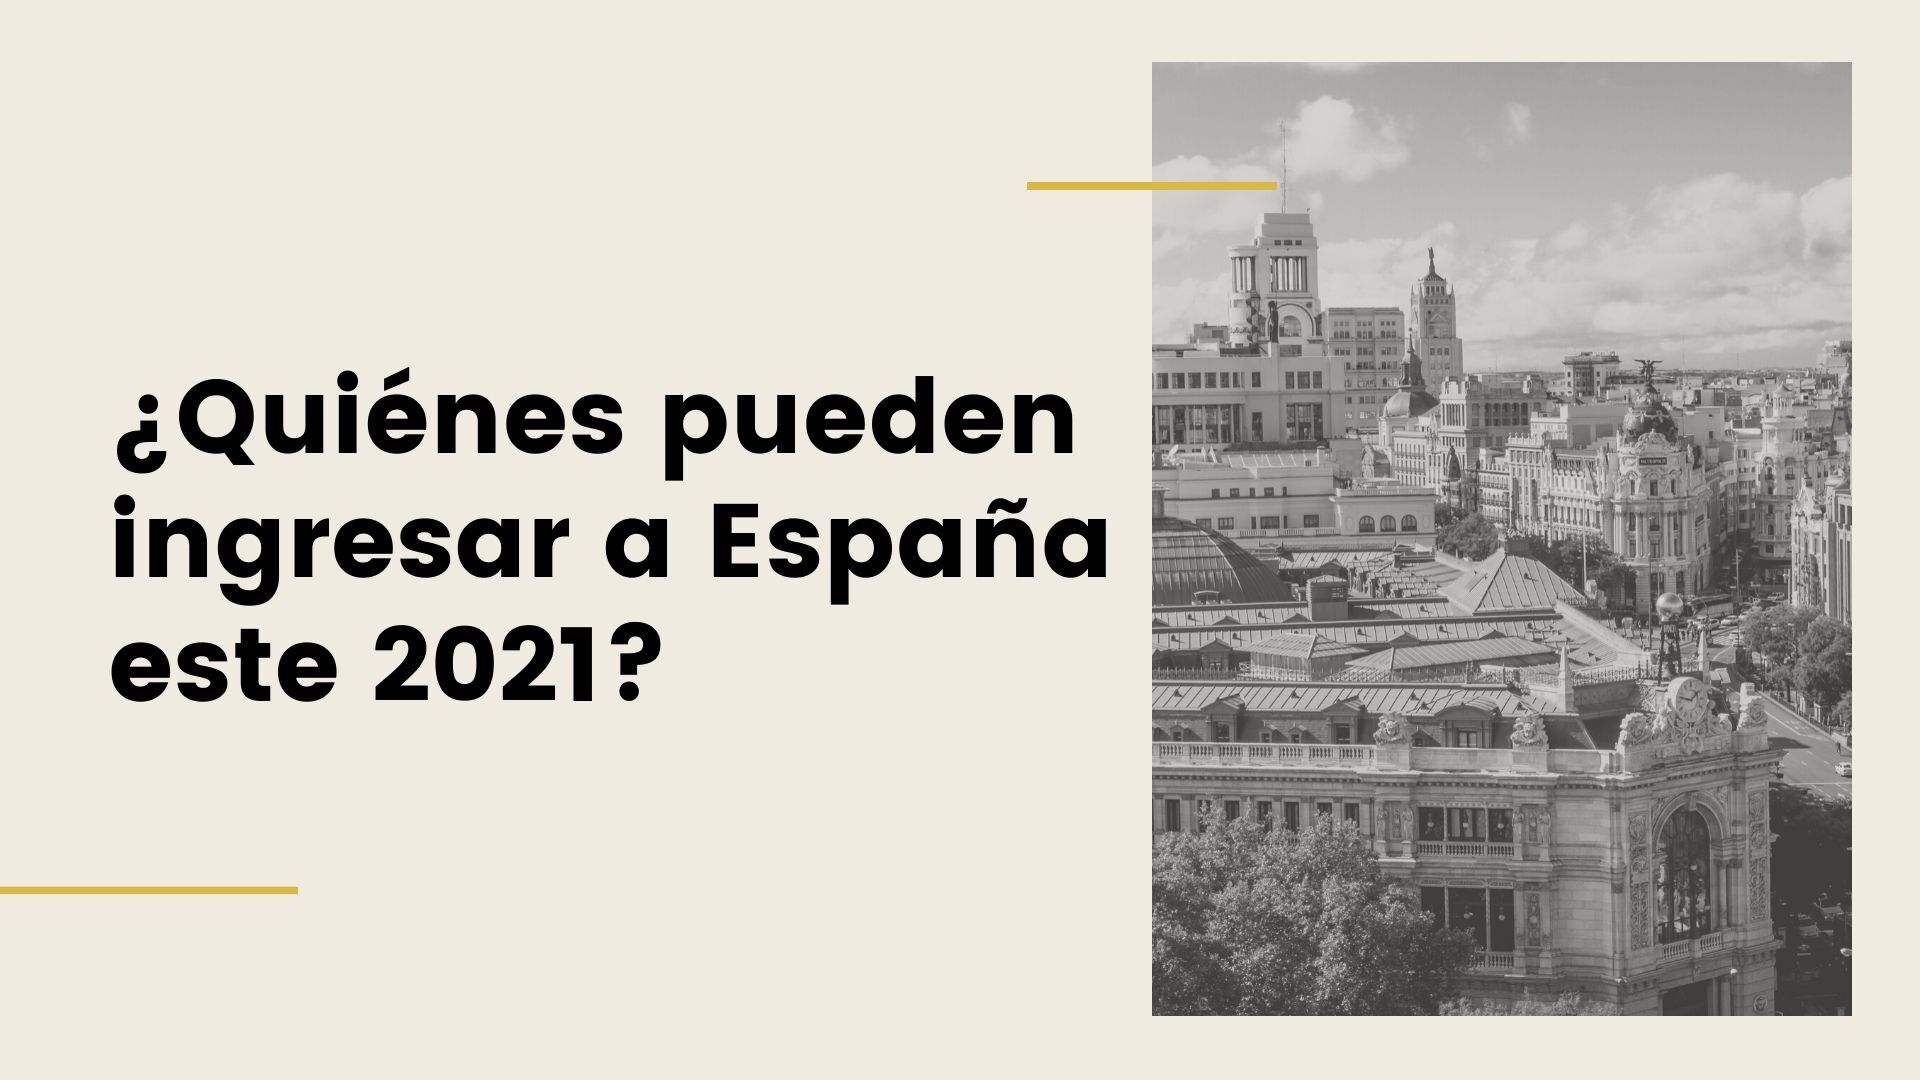 ¿Quienes pueden ingresar a España este 2021?